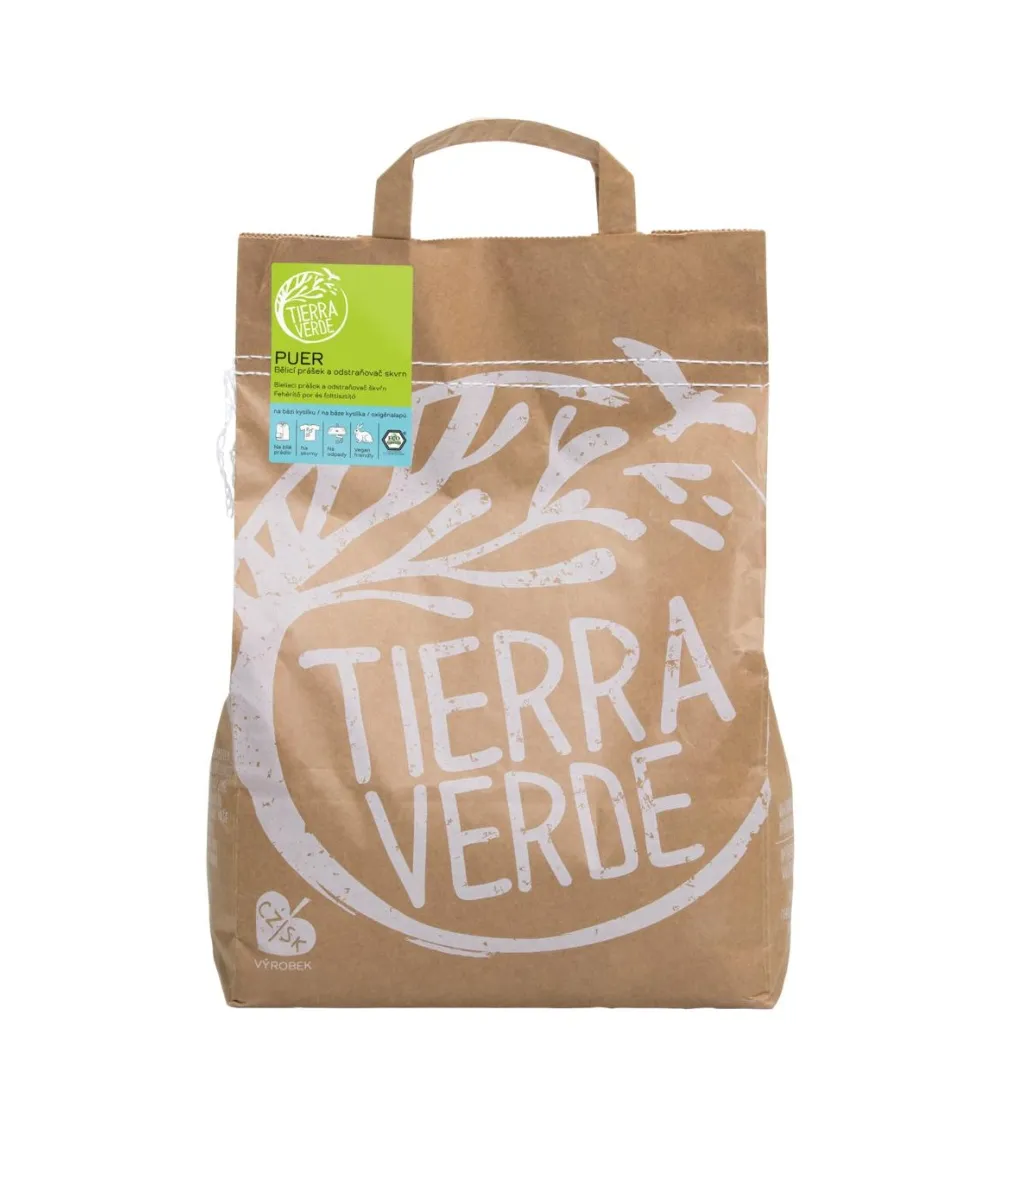 Tierra Verde Puer bělicí prášek a odstraňovač skvrn 5 kg